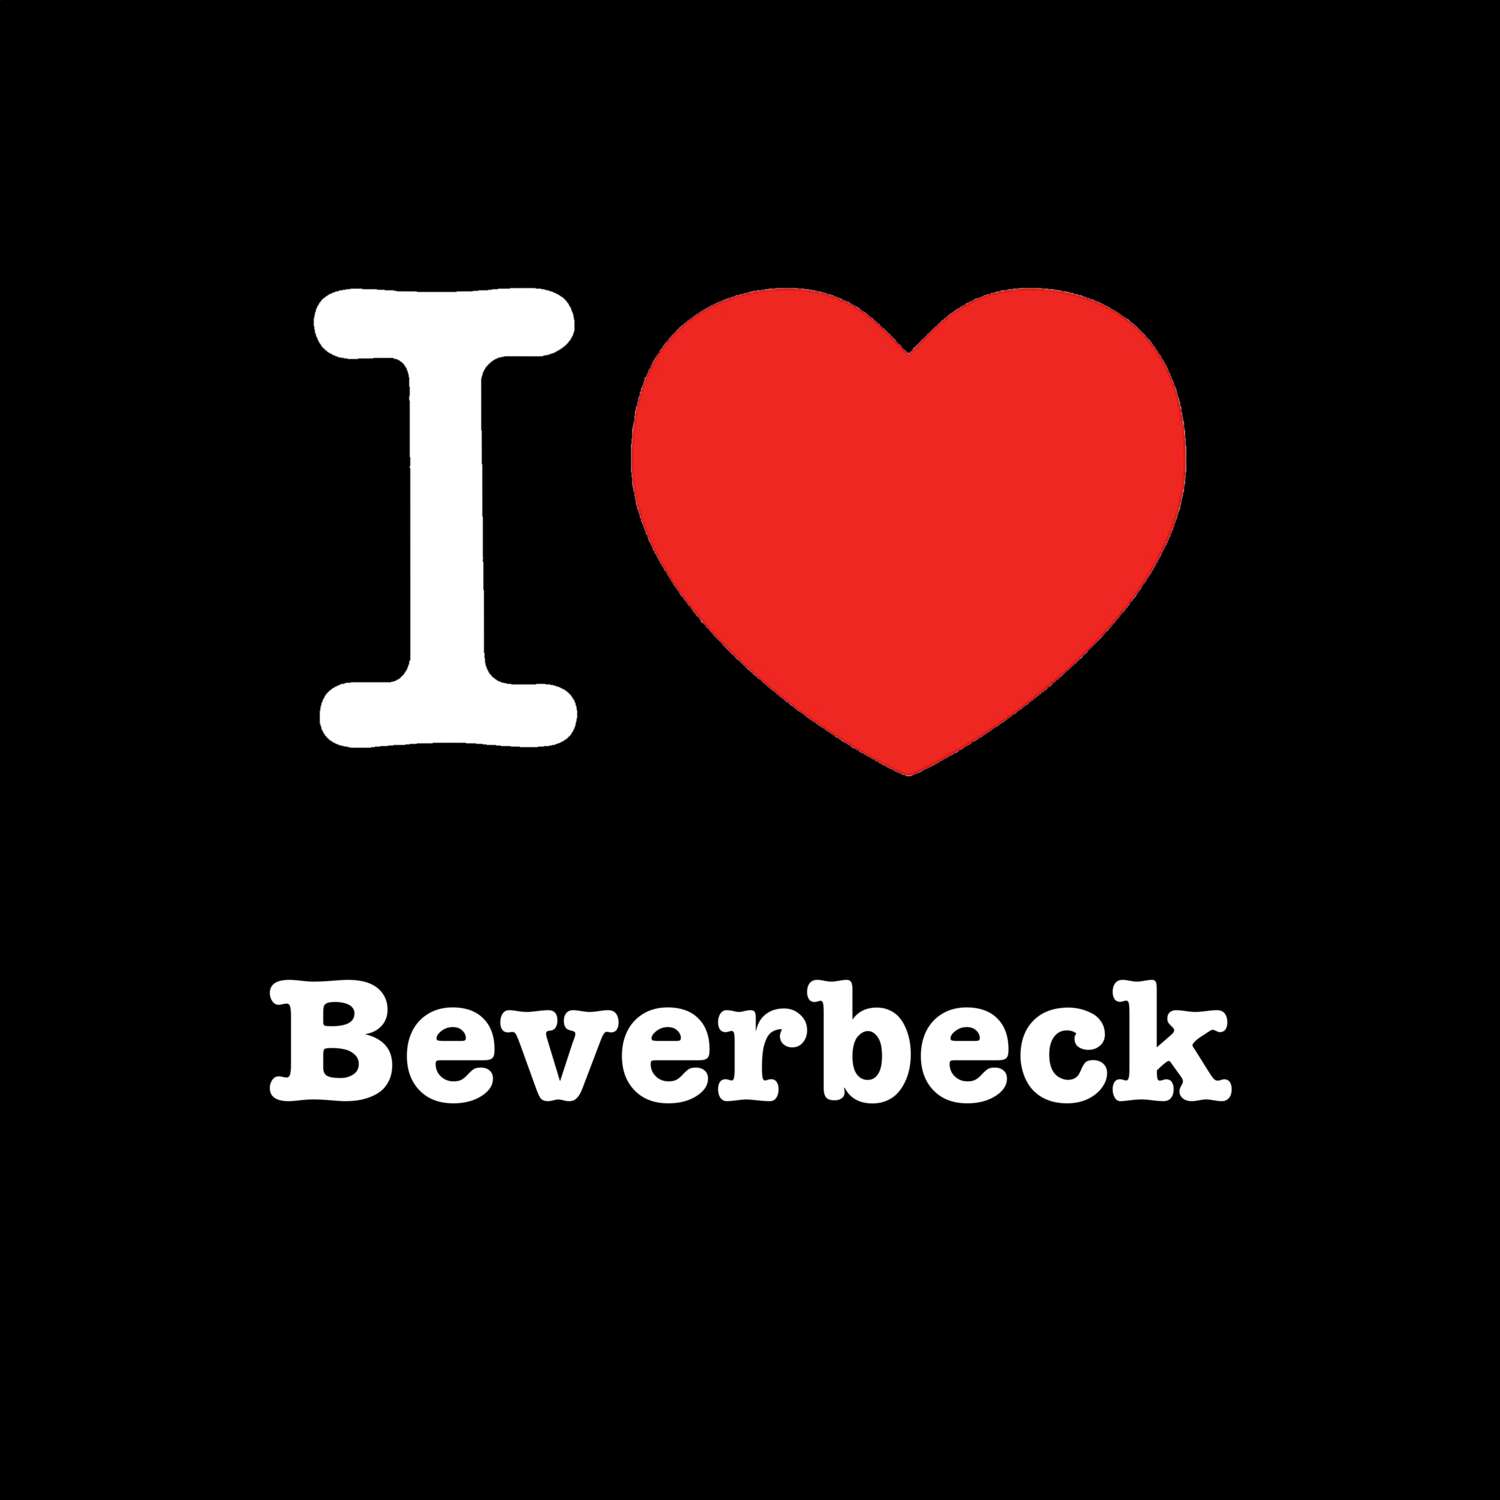 Beverbeck T-Shirt »I love«